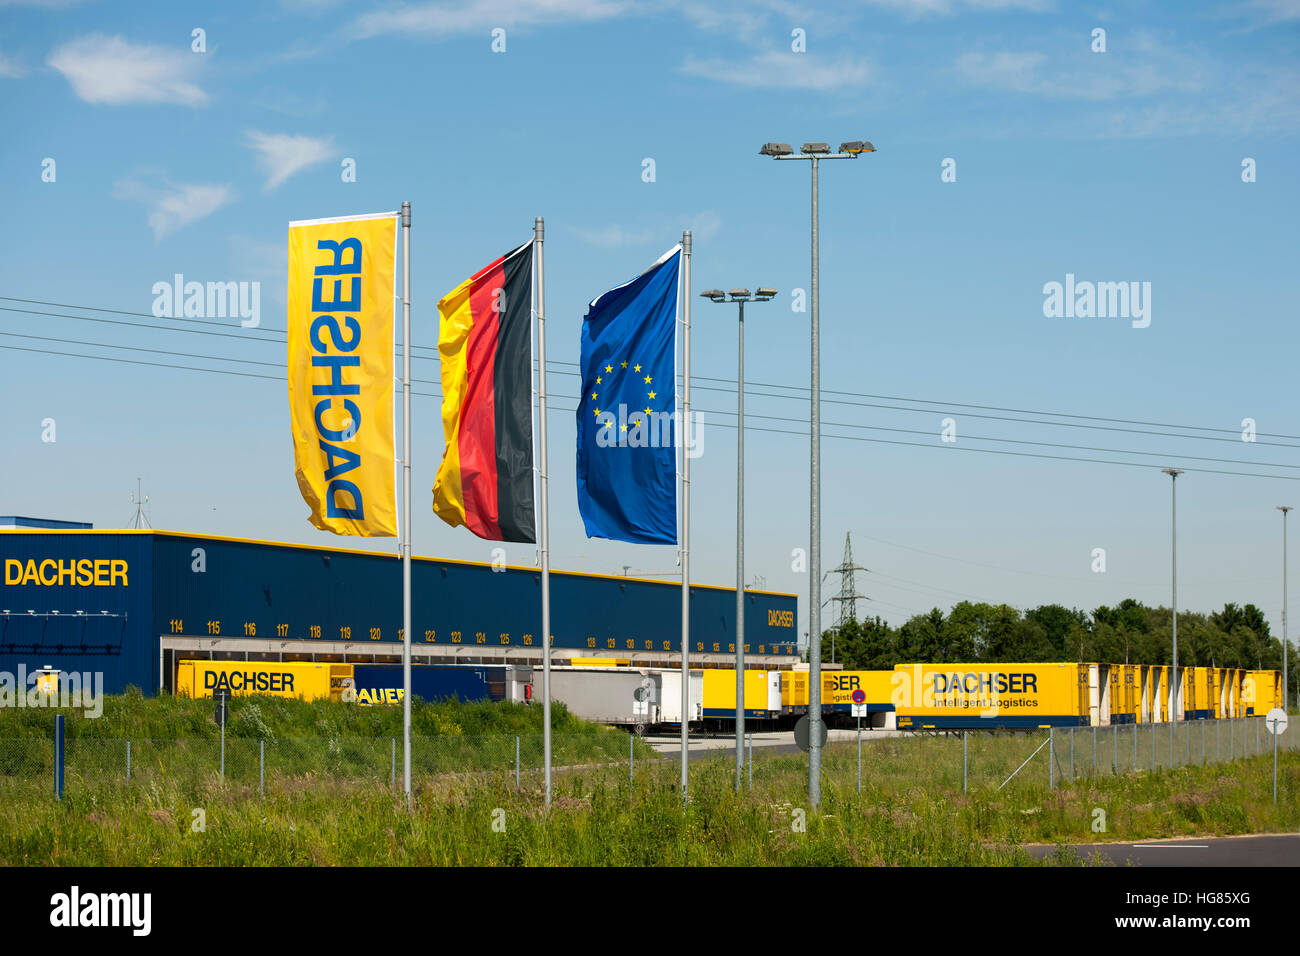 Deutschland, NRW, Aquisgrán, Alsdorf-Schaufenberg Städteregion, Dachser Logistik-Unternehmen Foto de stock